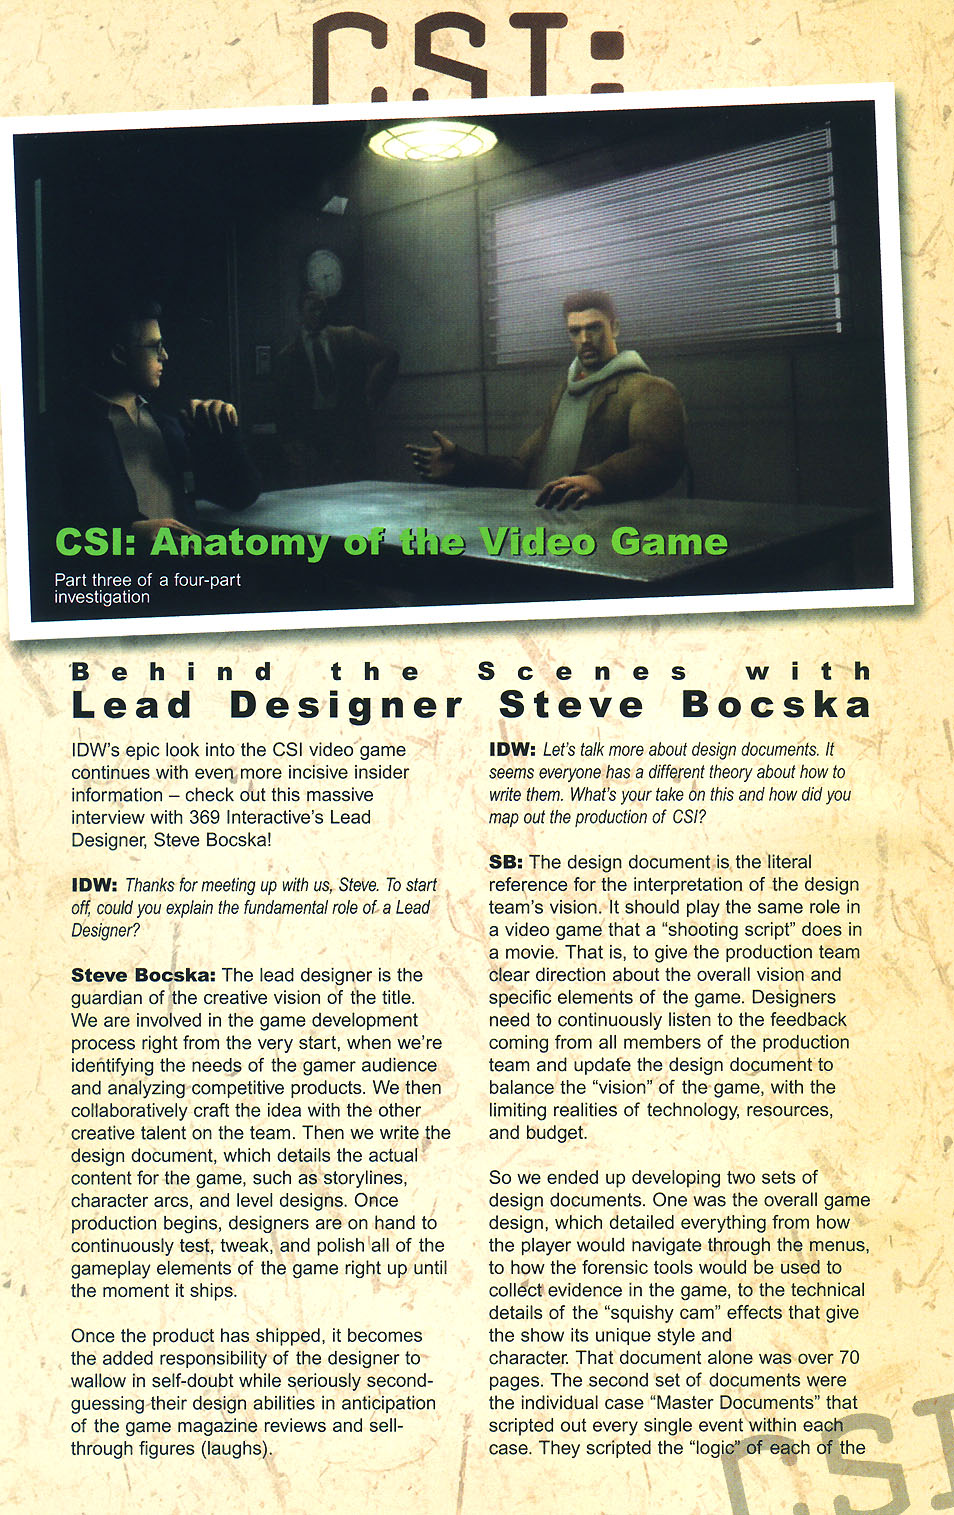 Read online CSI: Crime Scene Investigation comic -  Issue #4 - 28